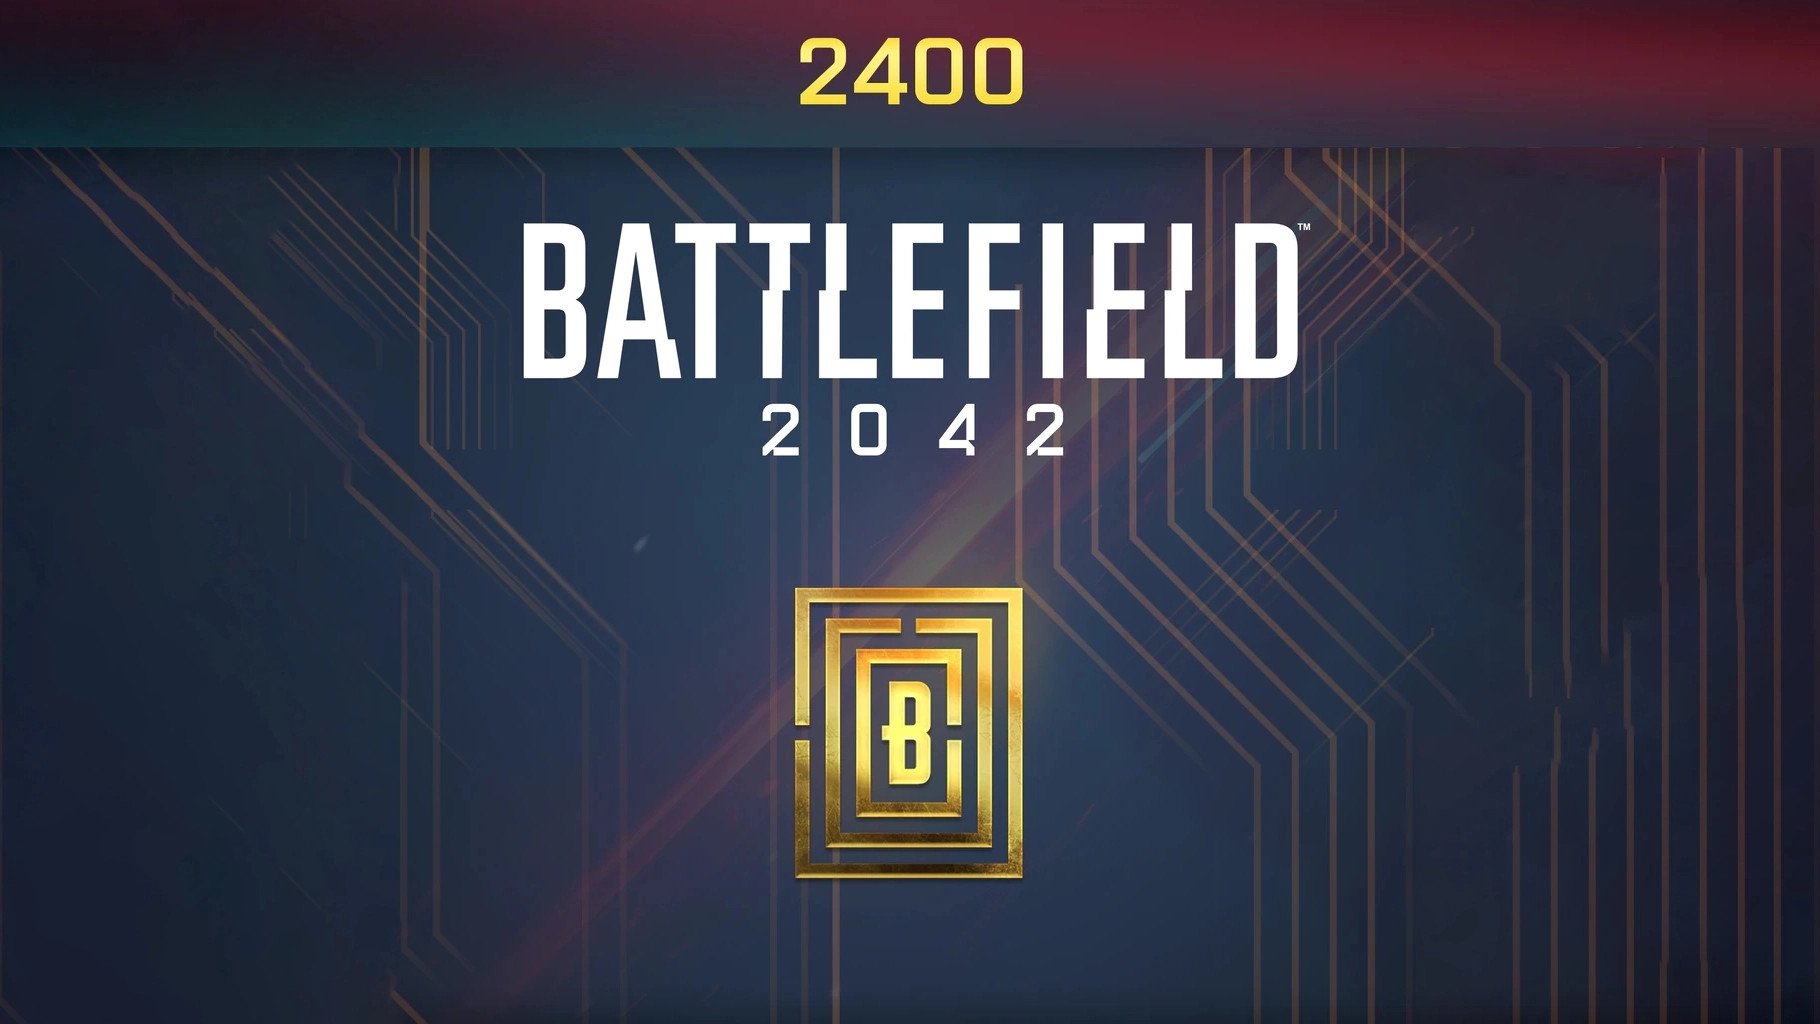 Battlefield 2042 - 2400 BFC Balance XBOX One / Xbox Series X|S CD Key, $20.9